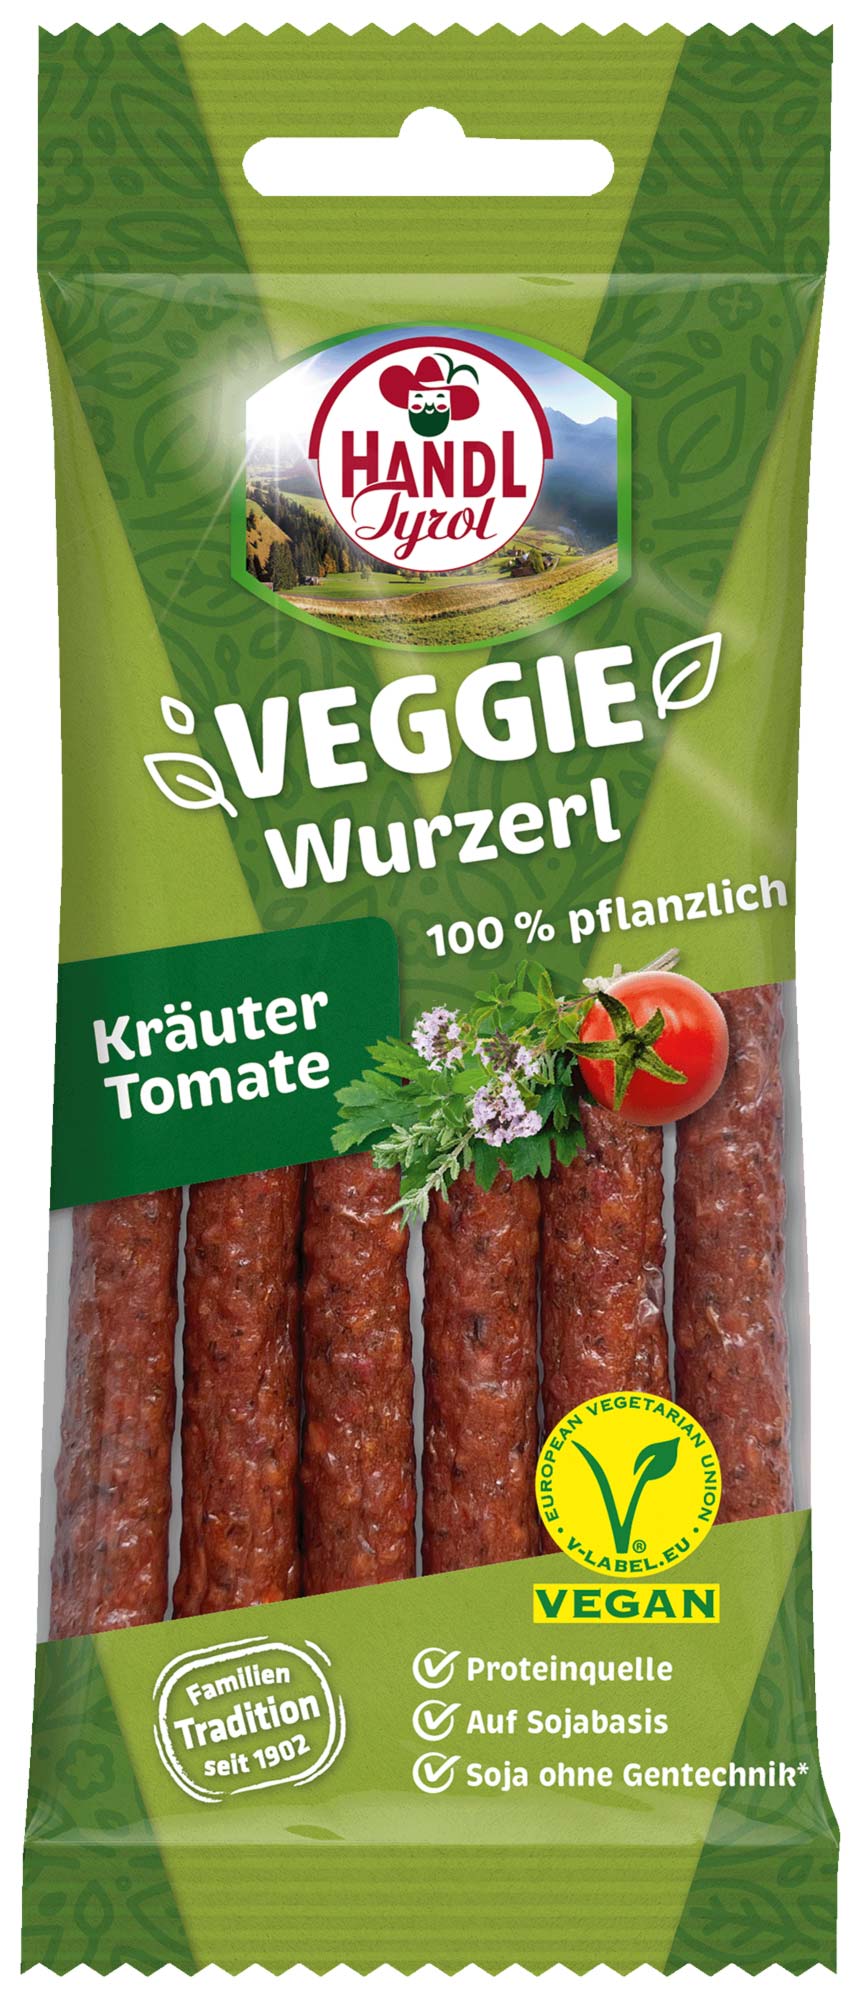 Handl Tyrol Veggie Kaminwurzerl Kraueter Tomate